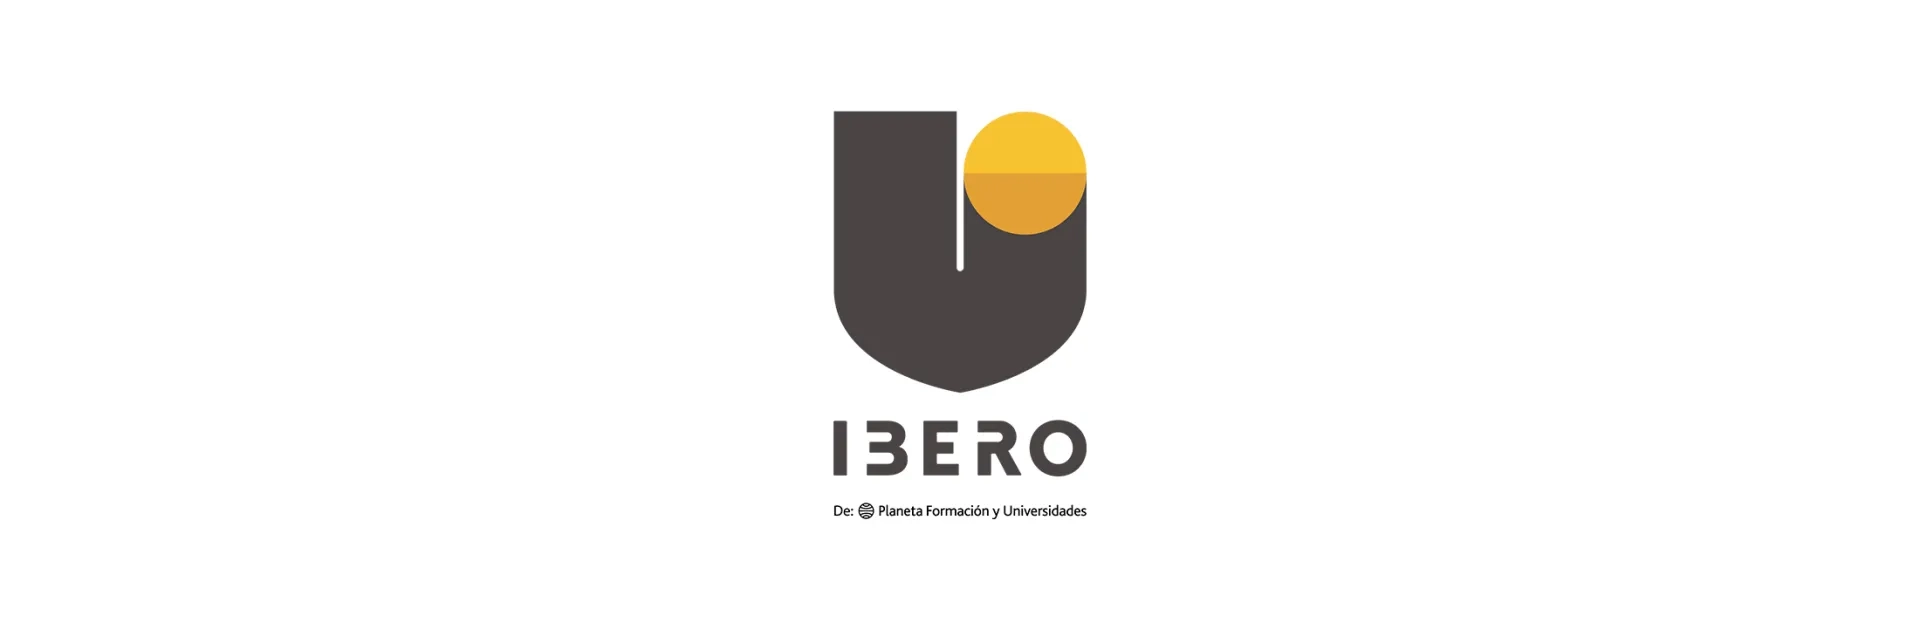 Video La Ibero rompe barreras